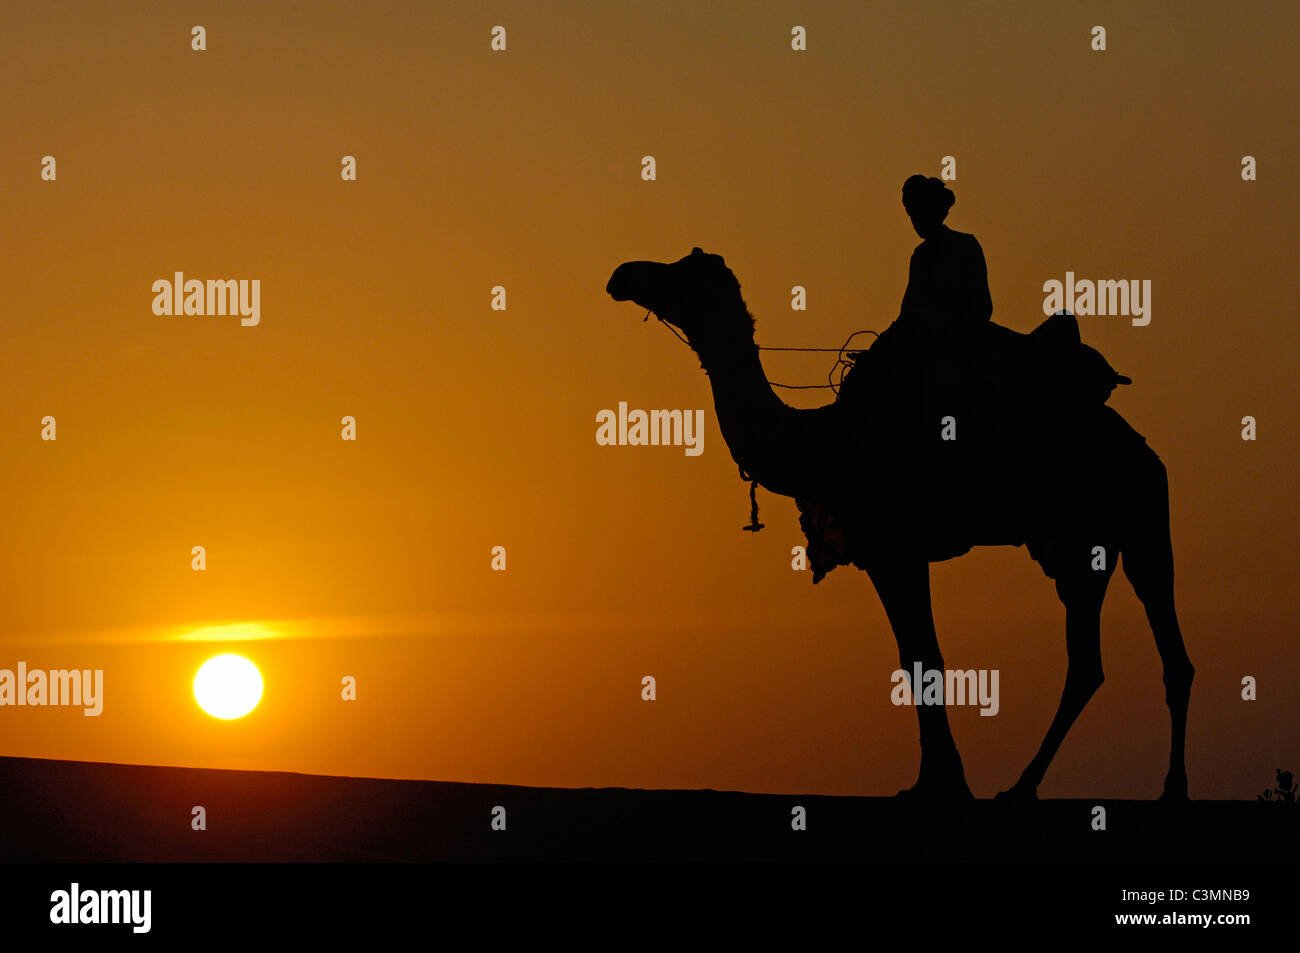 Dromedario, One-humped Camel (Camelus dromedarius). Rider su un dromedario nel deserto di Thar stagliano contro il sole di setting Foto Stock